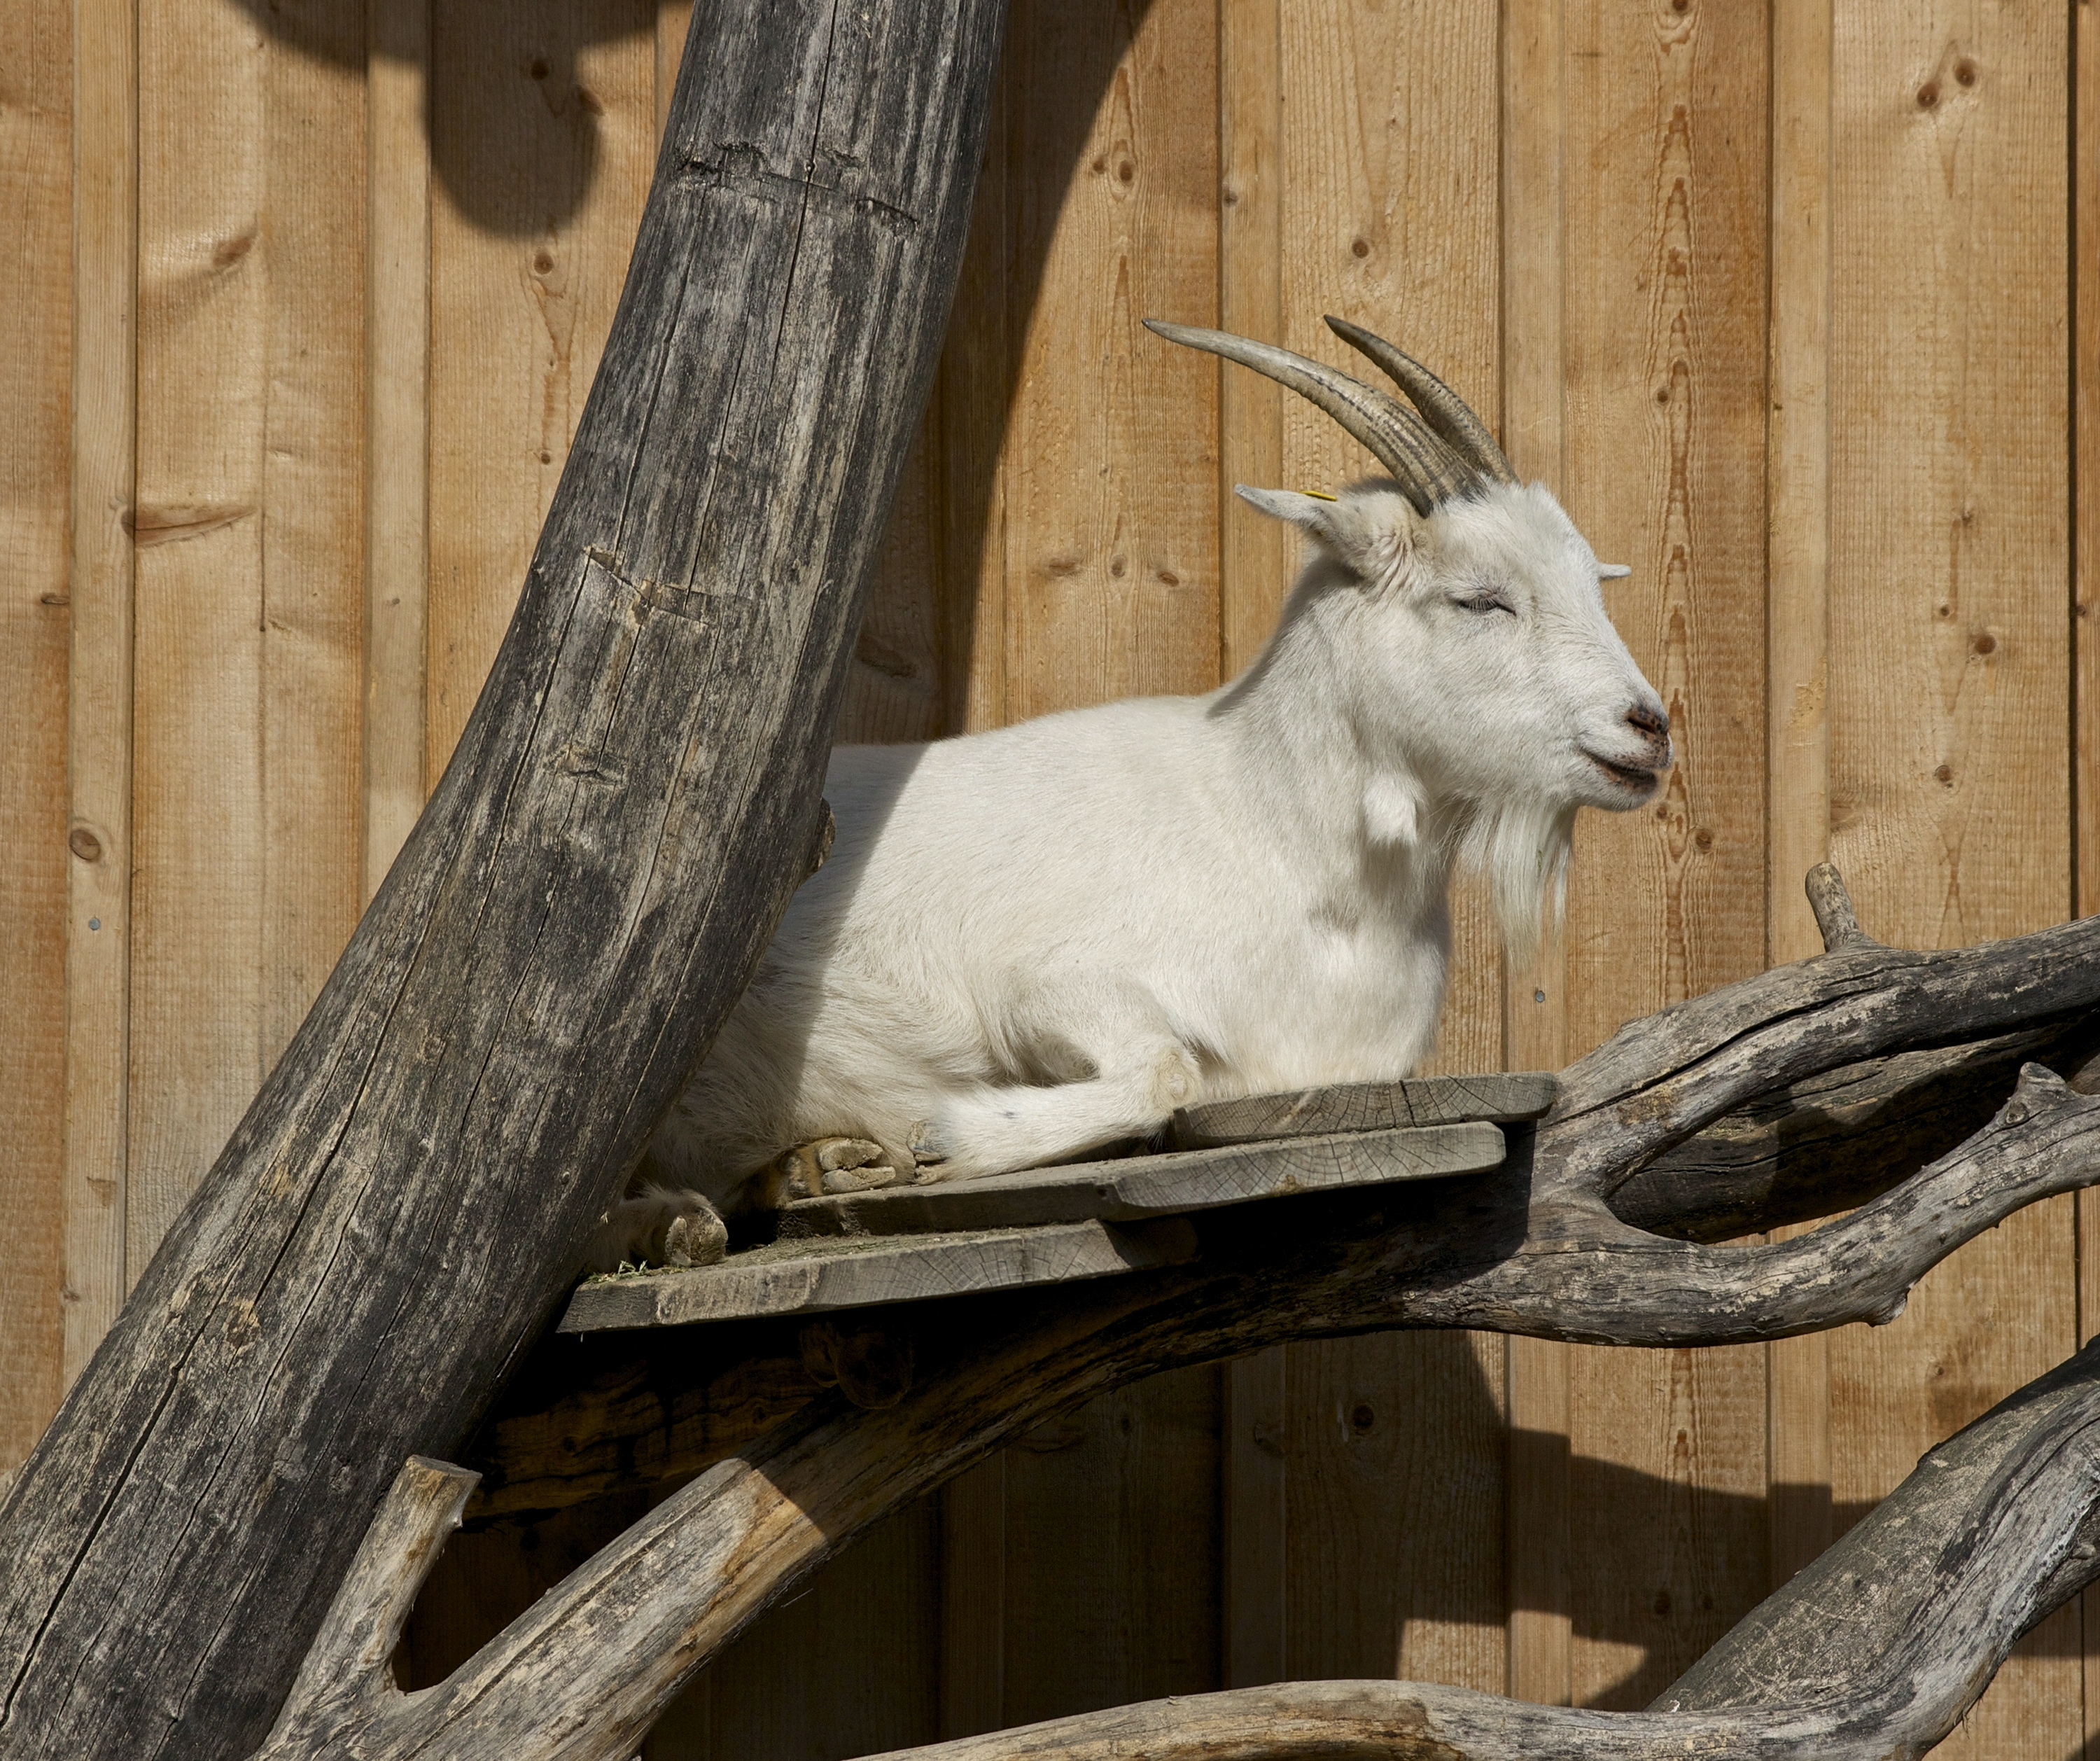 Goat zoo Schönbrunn